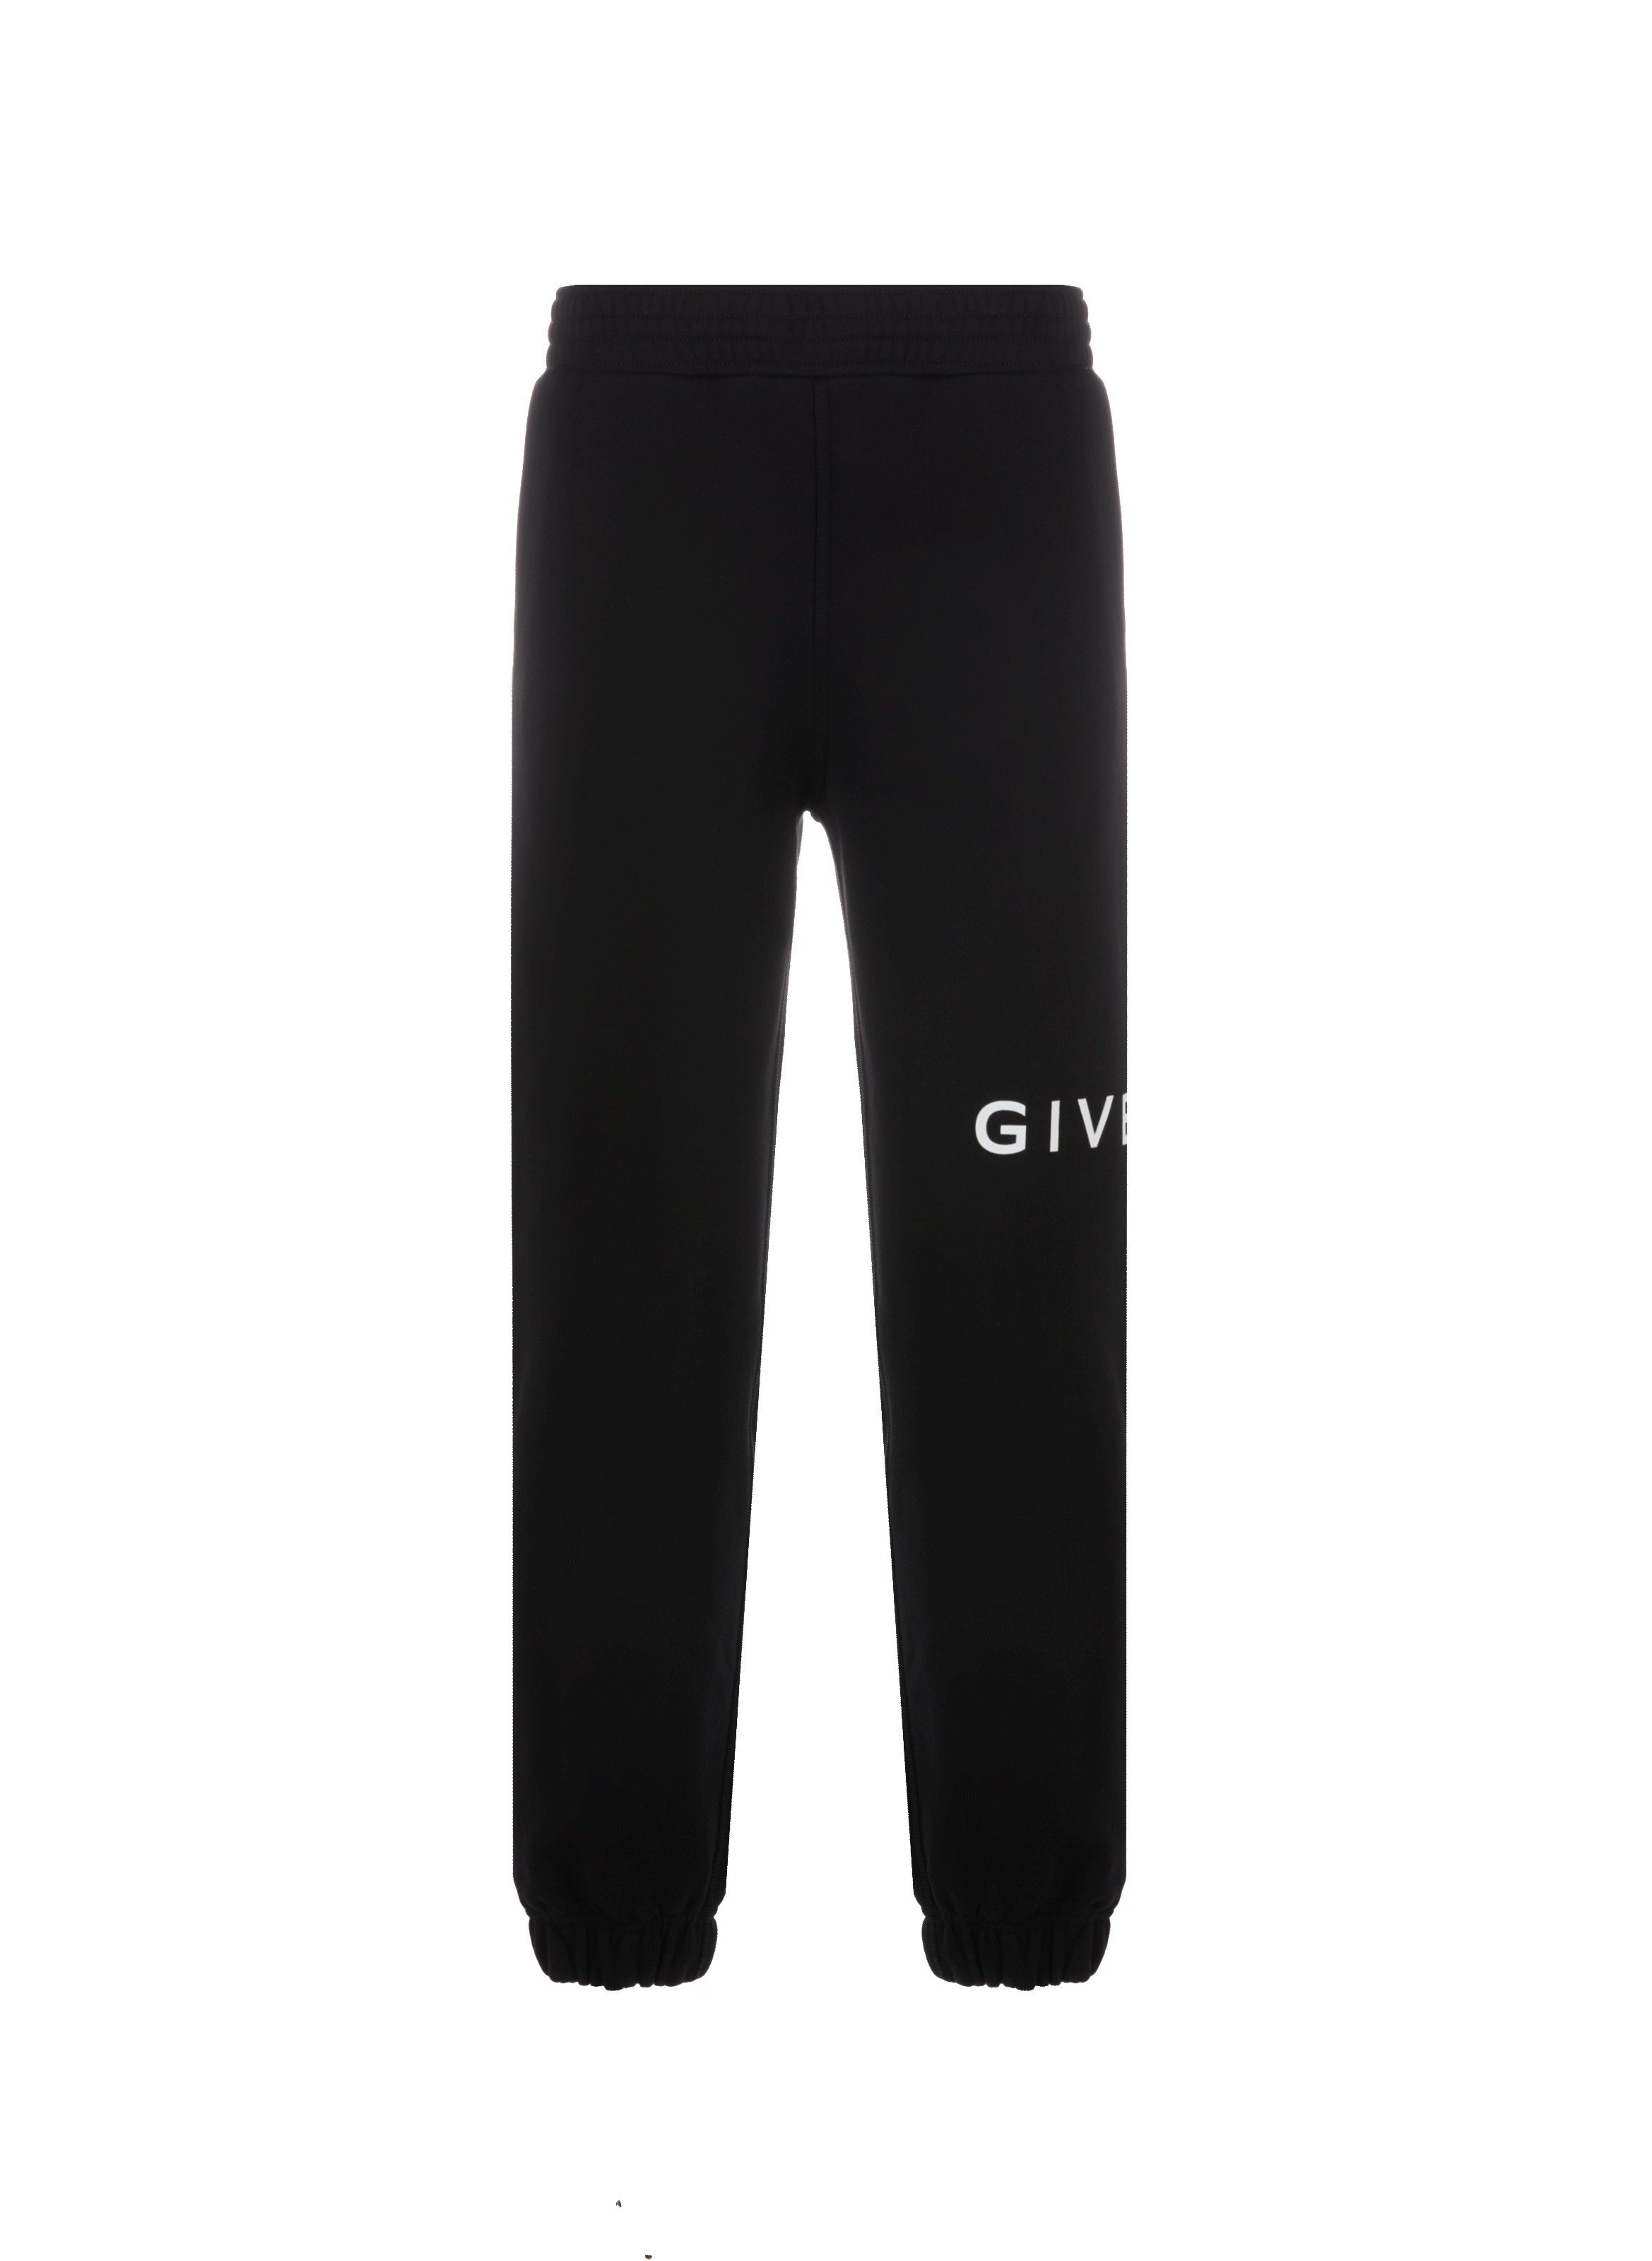 Givenchy Black Logo Lounge Pants for Men